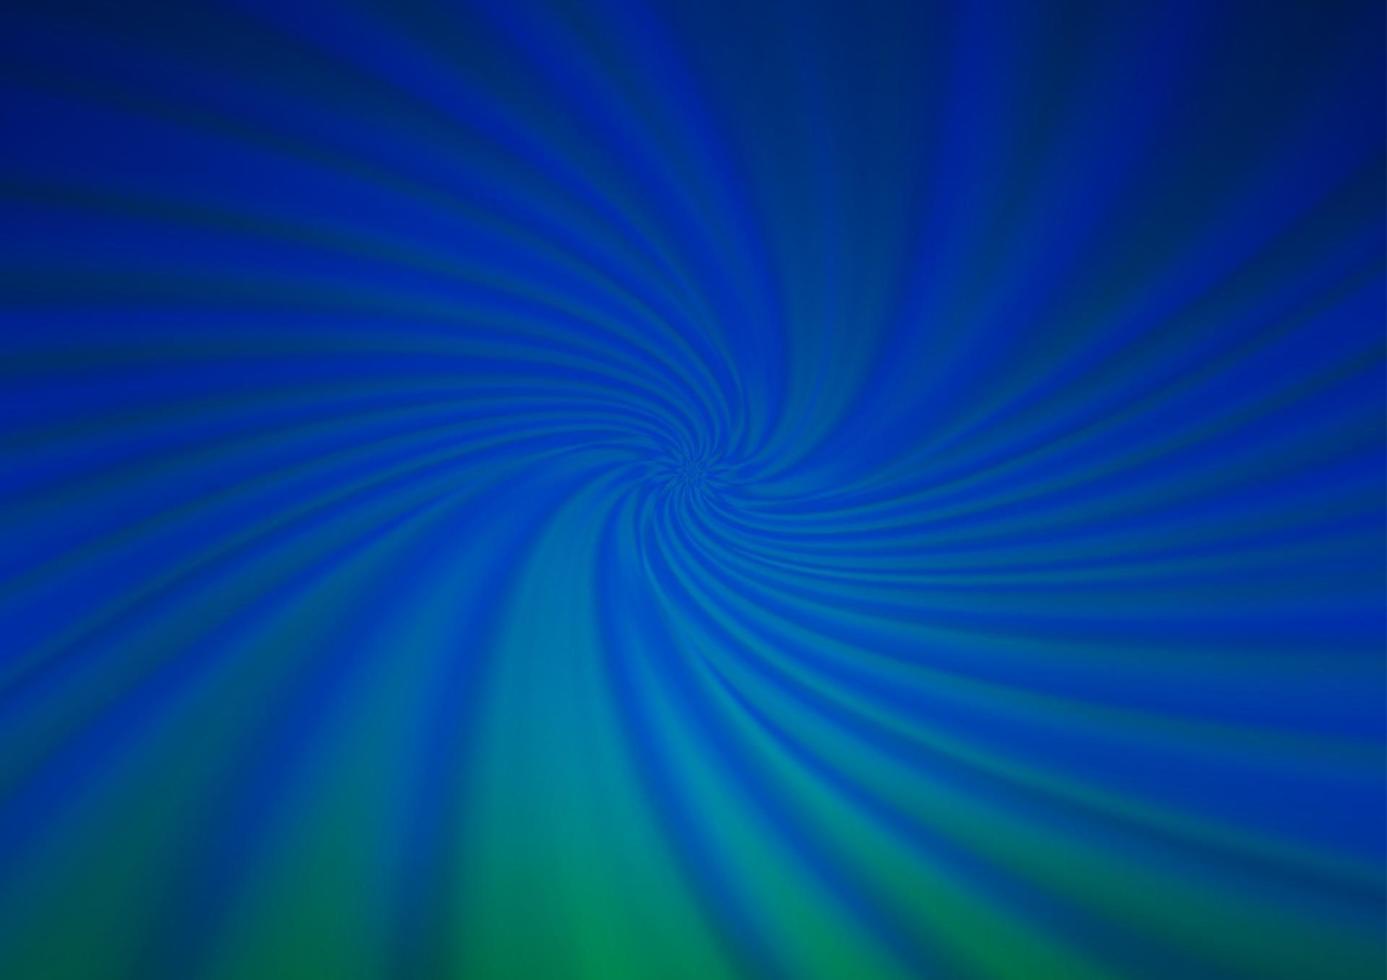 modelo borrado abstrato azul escuro do vetor. vetor